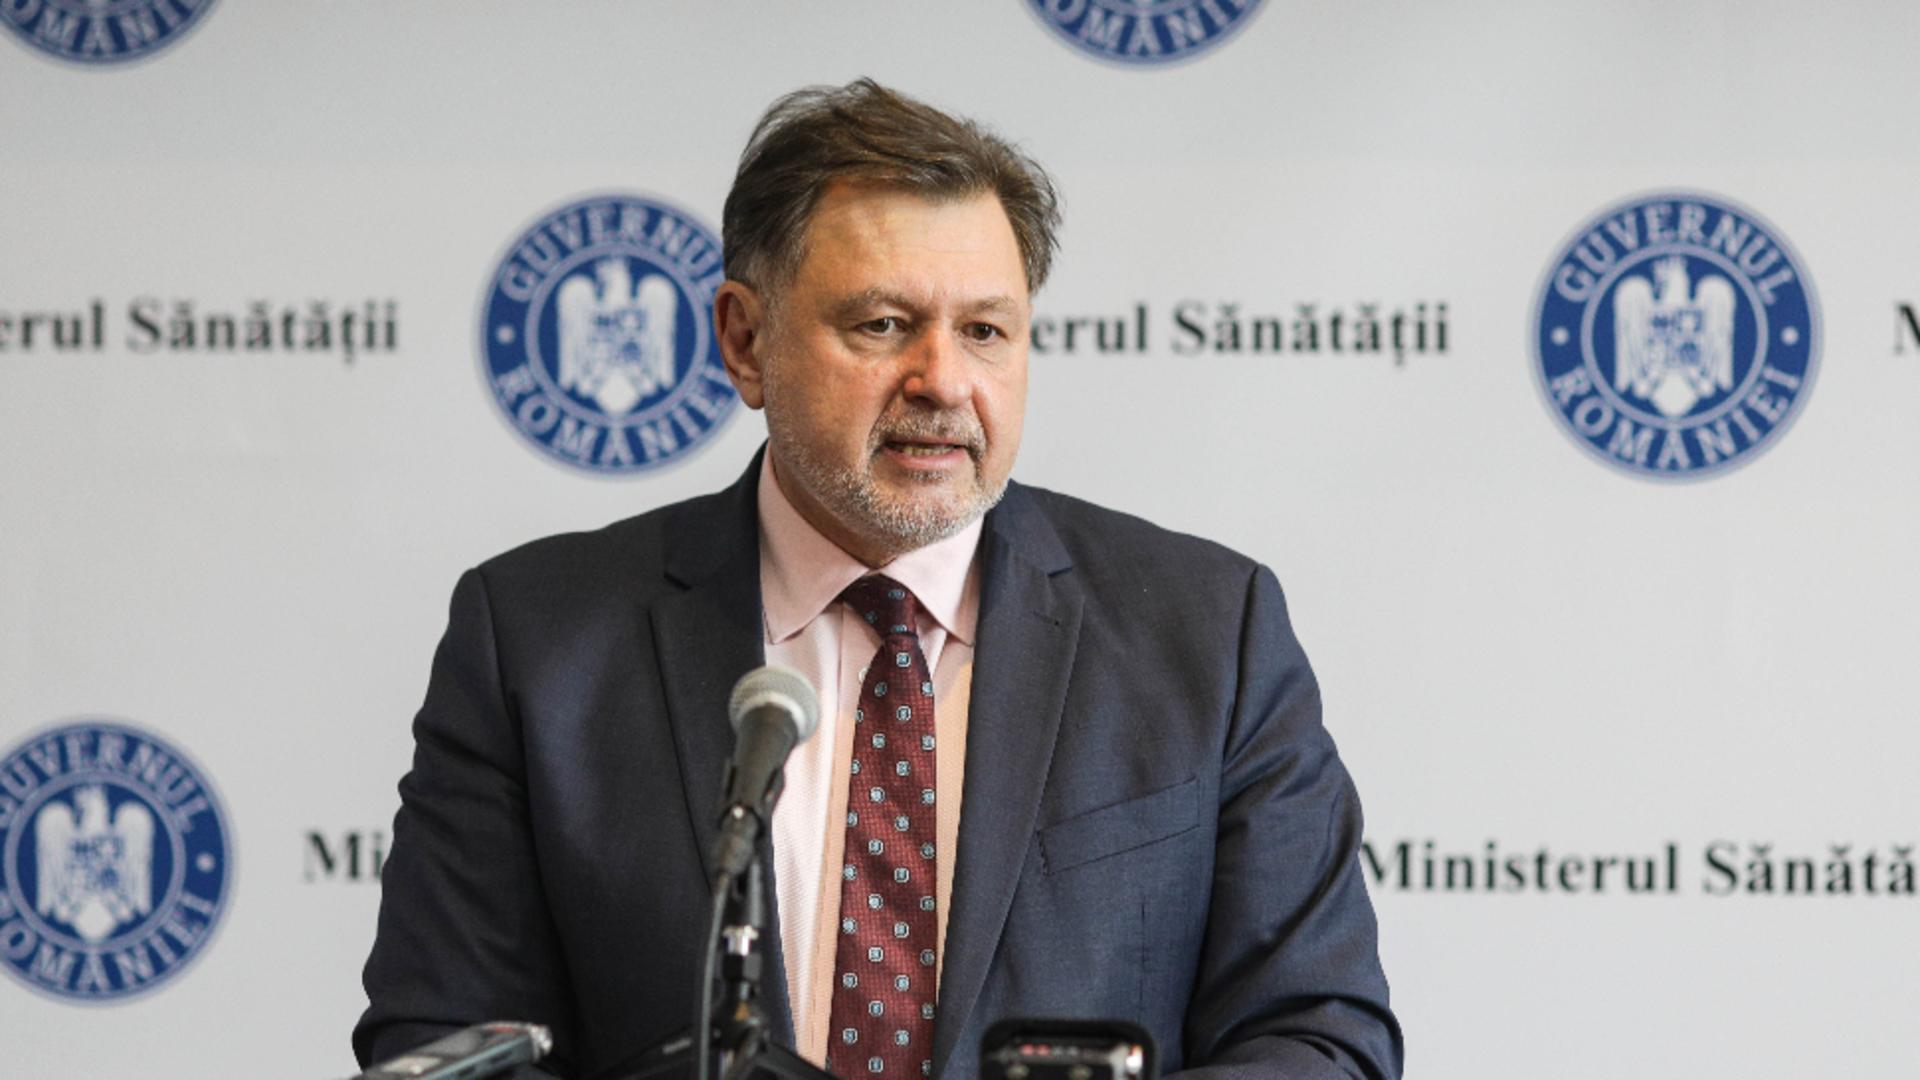 Ministrul sănătății, Alexandru Rafila, clarifică controversele privind impozitarea concediilor medicale